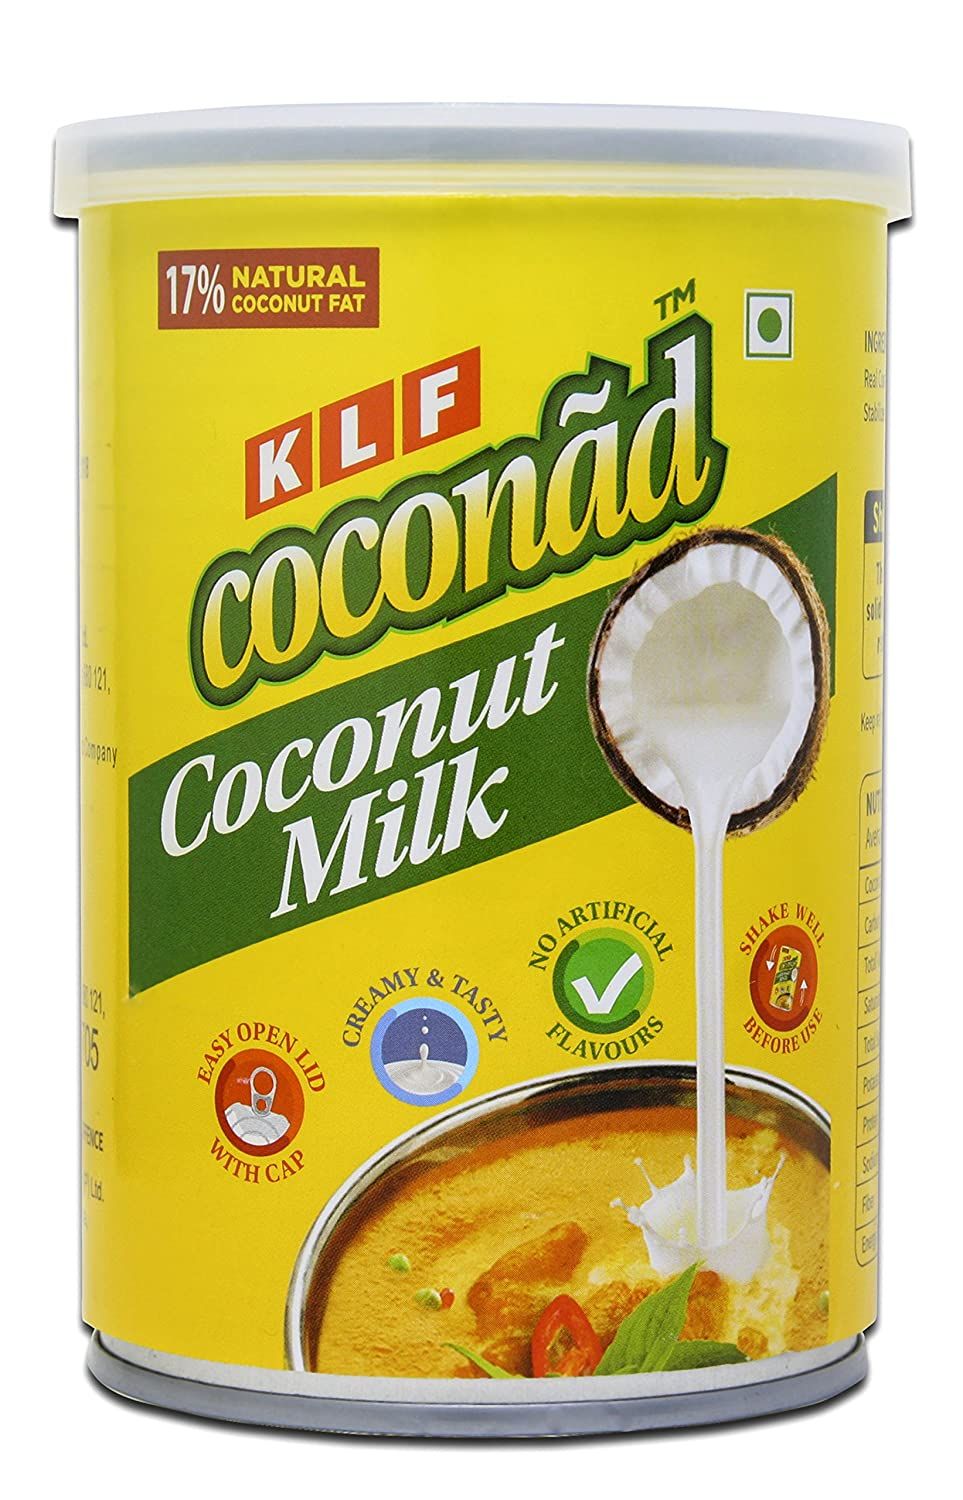 KLF Coconad Coconut Milk Image